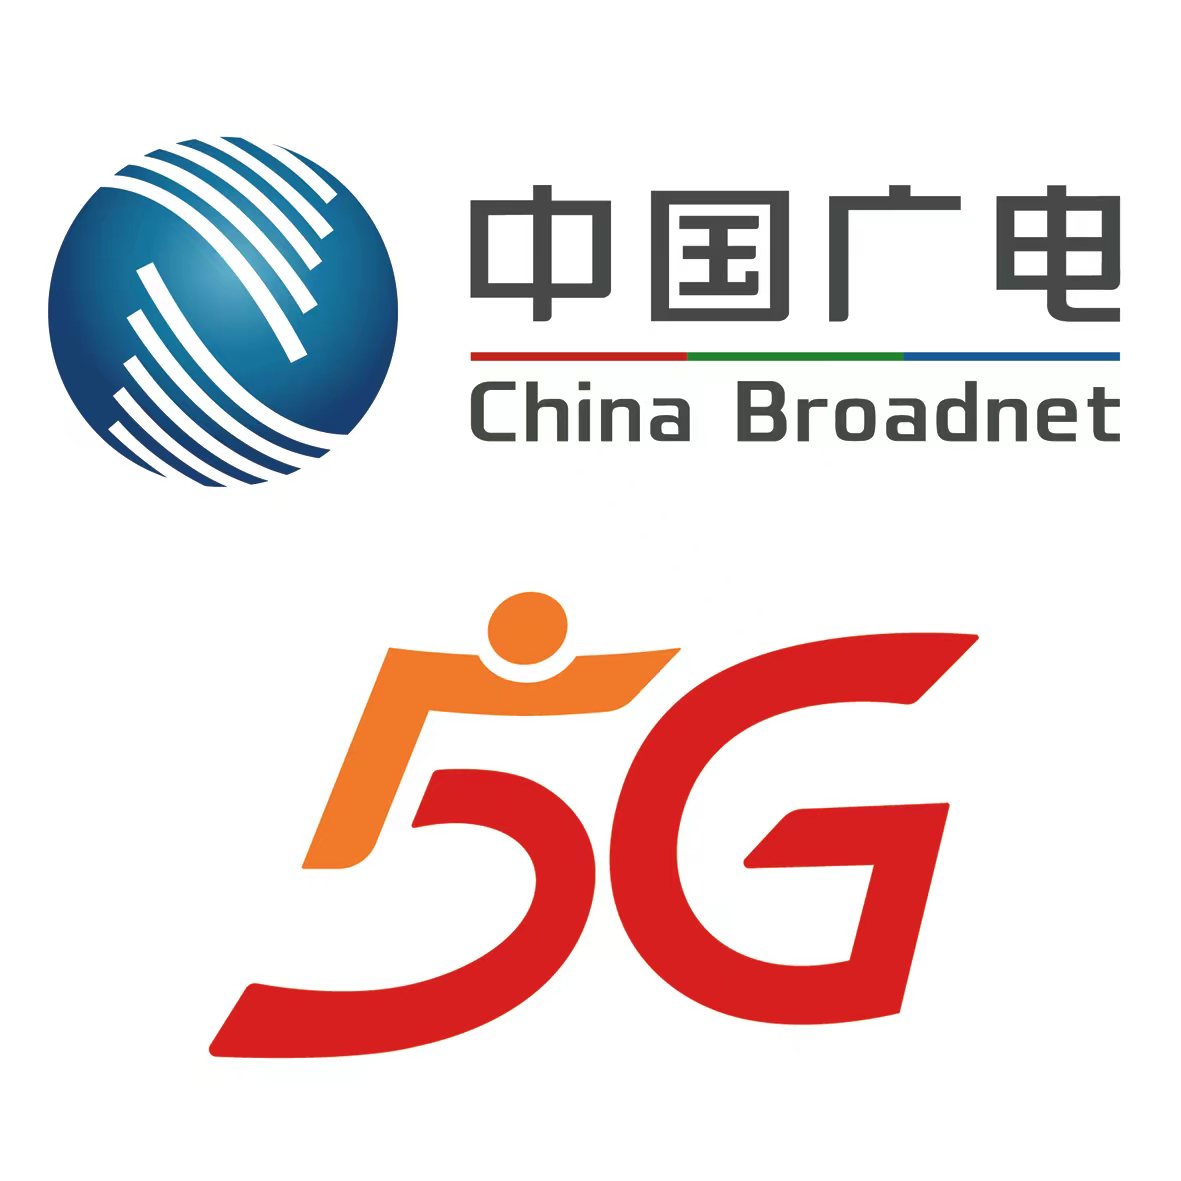 中国广电已建成60万座5G基站 5G用户已超过2300万